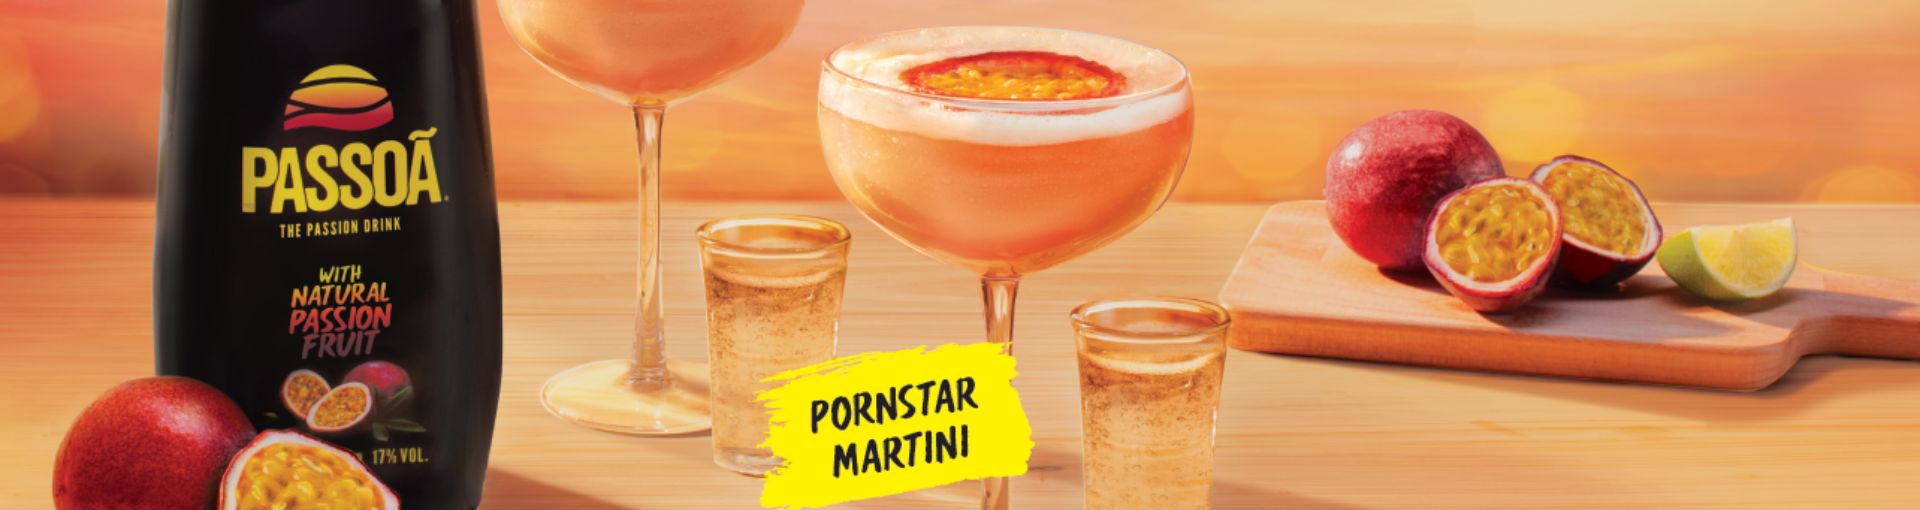 Passoa und zwei Gläser mit Pornstar Martini vor orangenem Hintergrund